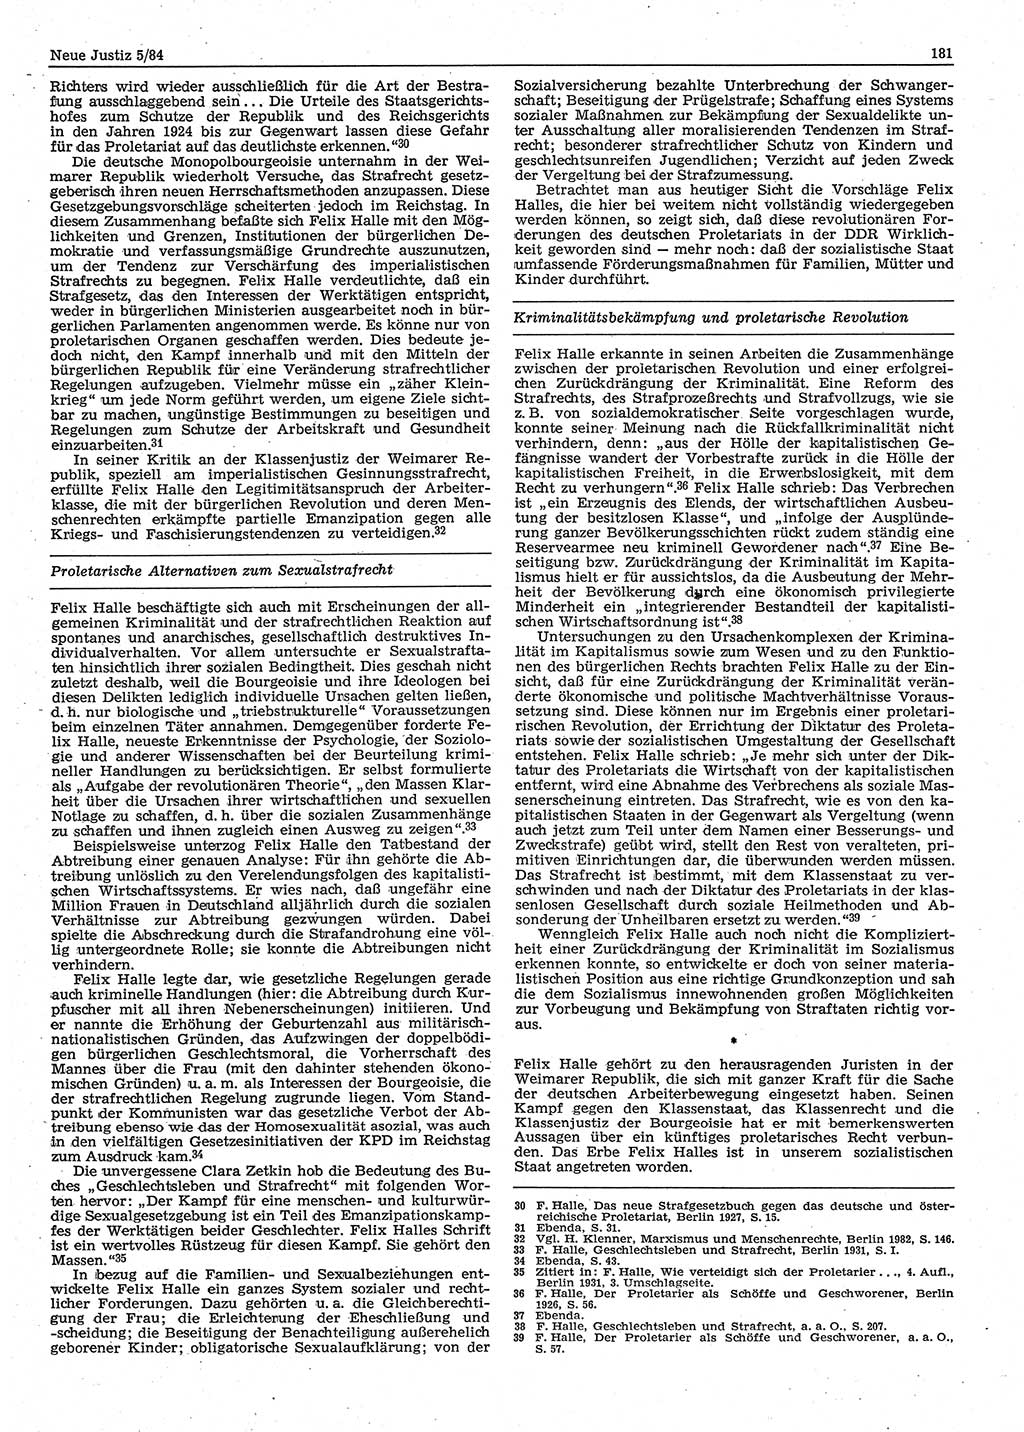 Neue Justiz (NJ), Zeitschrift für sozialistisches Recht und Gesetzlichkeit [Deutsche Demokratische Republik (DDR)], 38. Jahrgang 1984, Seite 181 (NJ DDR 1984, S. 181)